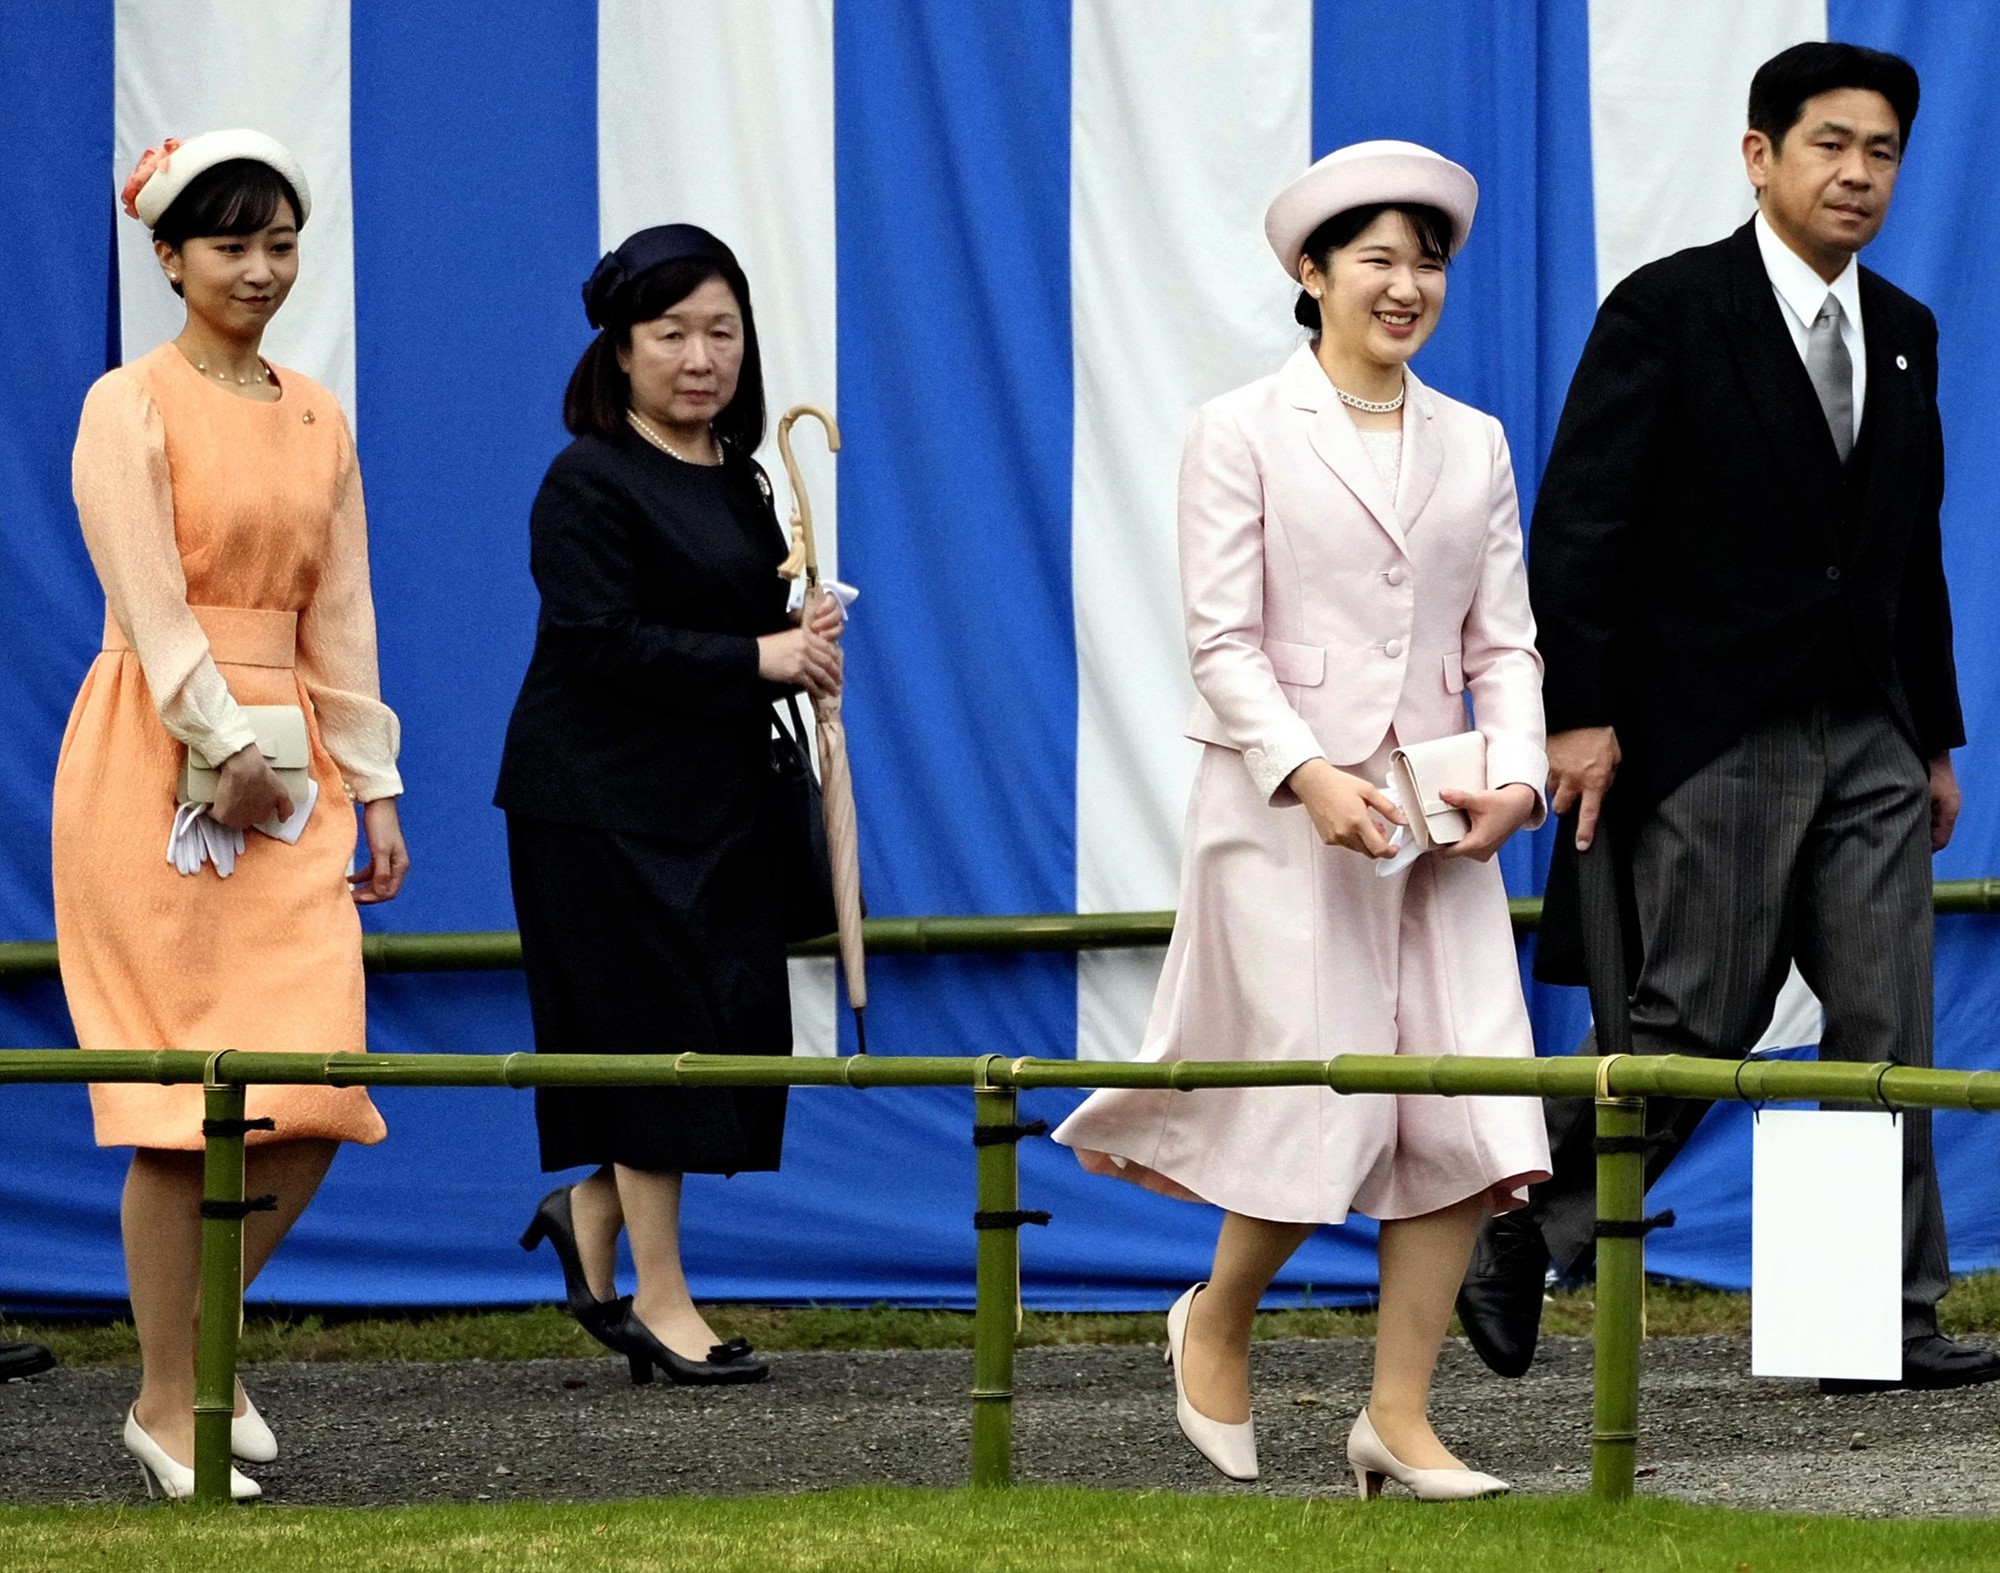 Hoàng gia Nhật Bản tổ chức tiệc mùa xuân: Hai công chúa tươi vui rạng rỡ chiếm trọn spotlight giữa sự kiện 1.400 người- Ảnh 4.